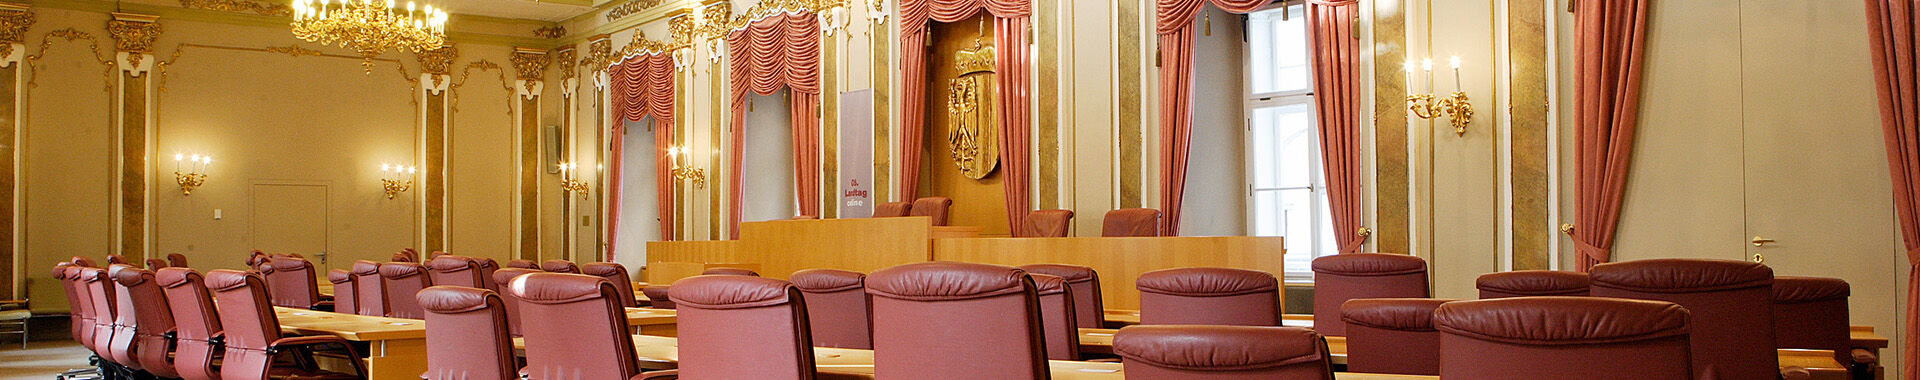 Landtagssitzungssaal mit leeren Stühlen